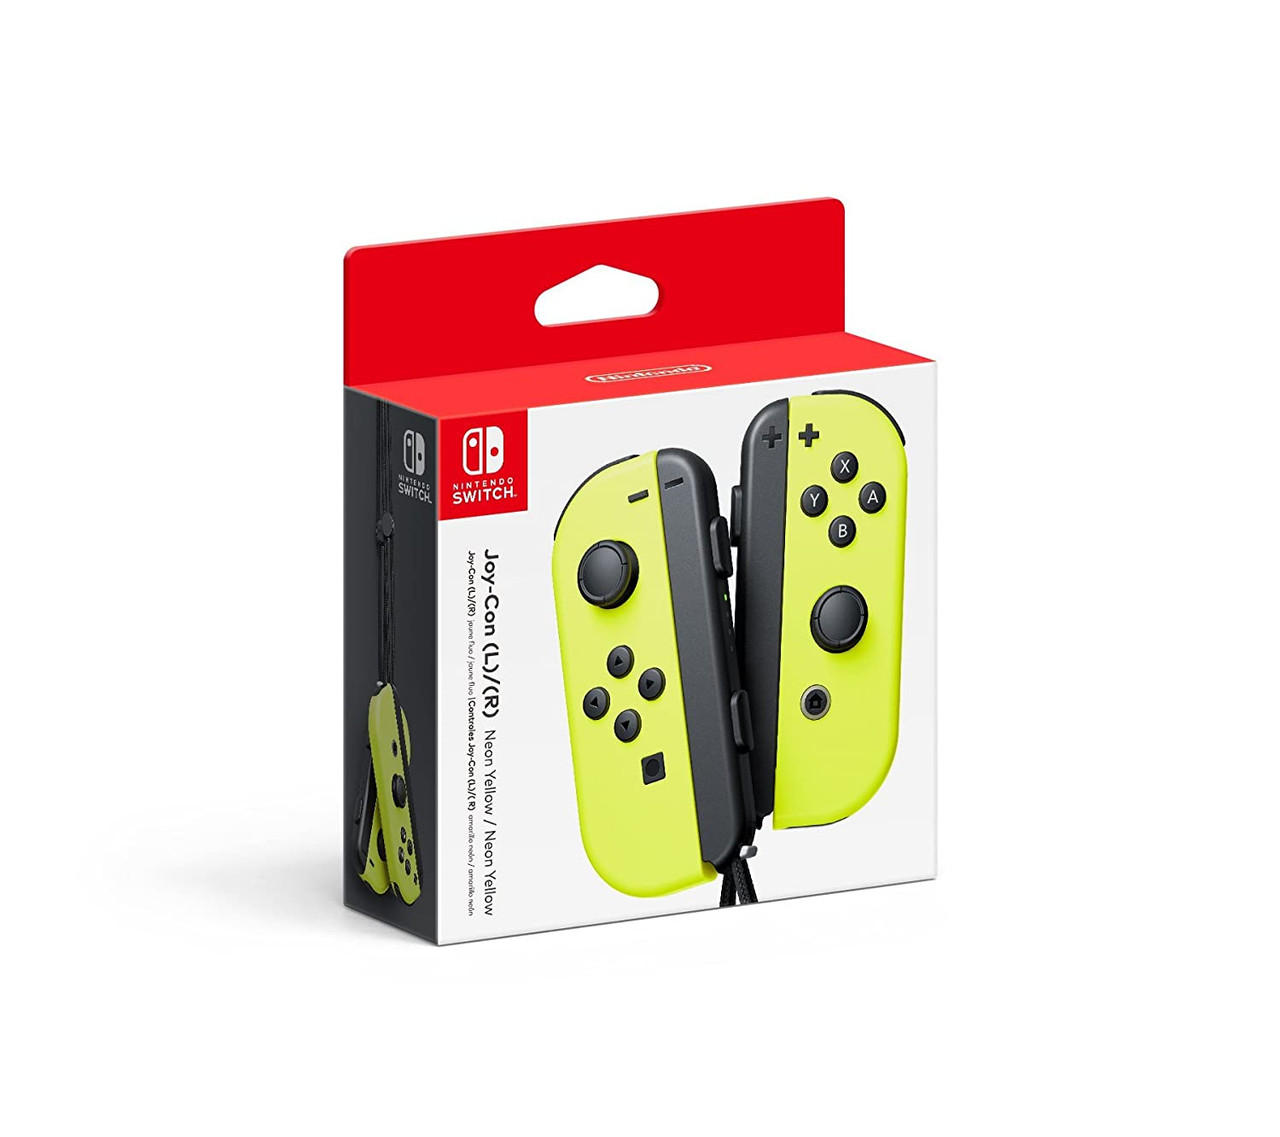  Nintendo Joy-Con (L/R) - Neon Red/Neon Blue : Video Games